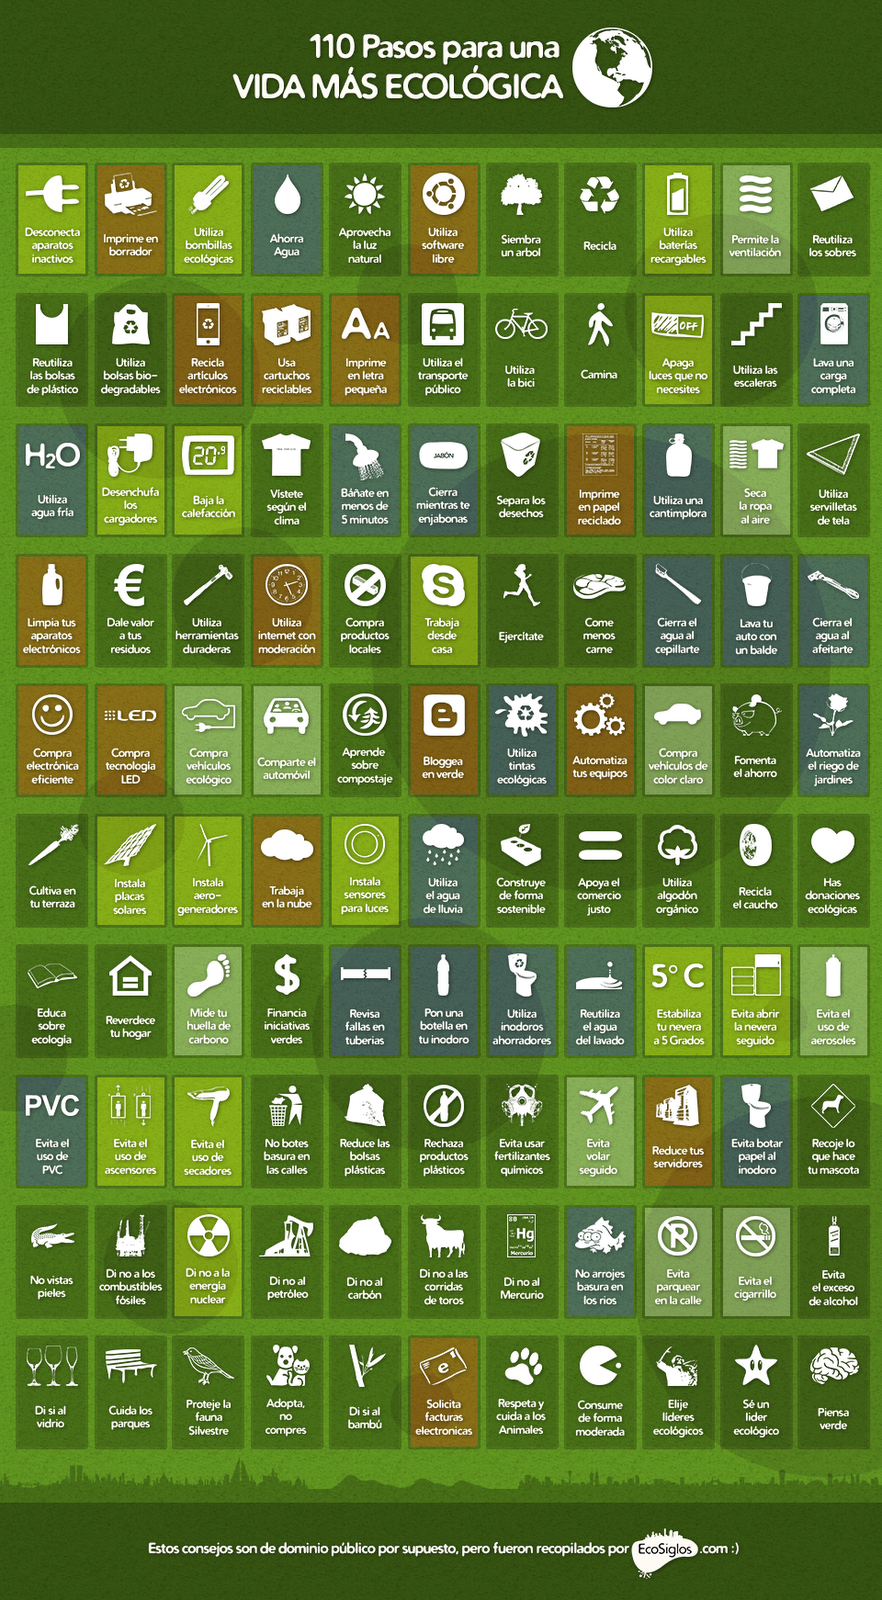 Poster con los 110 cosas que podemos hacer para ser más ecológicos